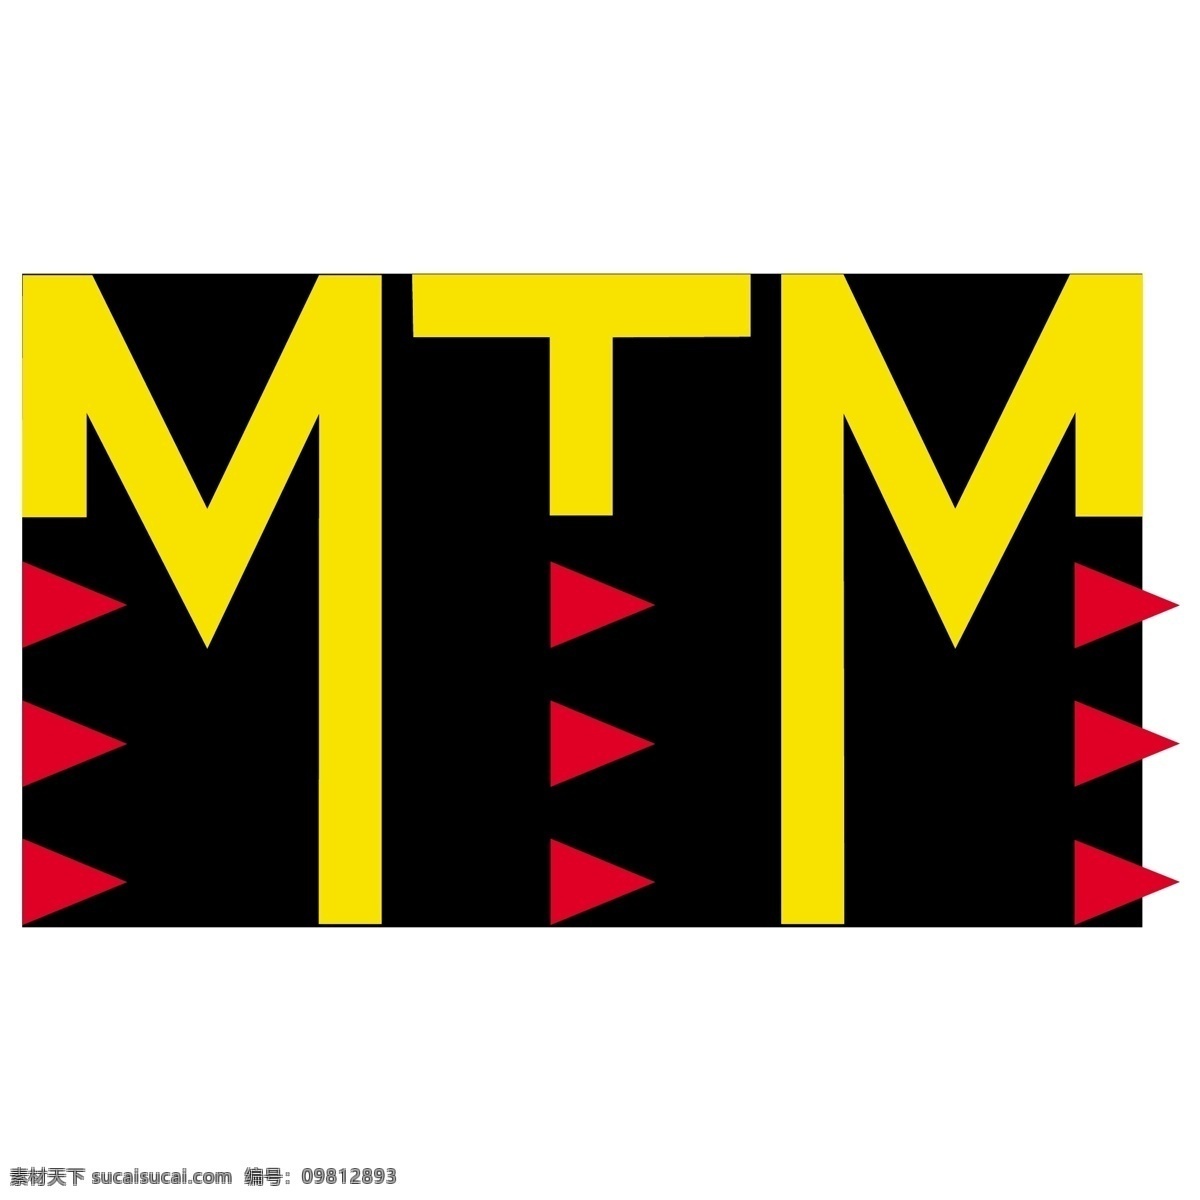 mtm 矢量标志下载 免费矢量标识 商标 品牌标识 标识 矢量 免费 品牌 公司 白色